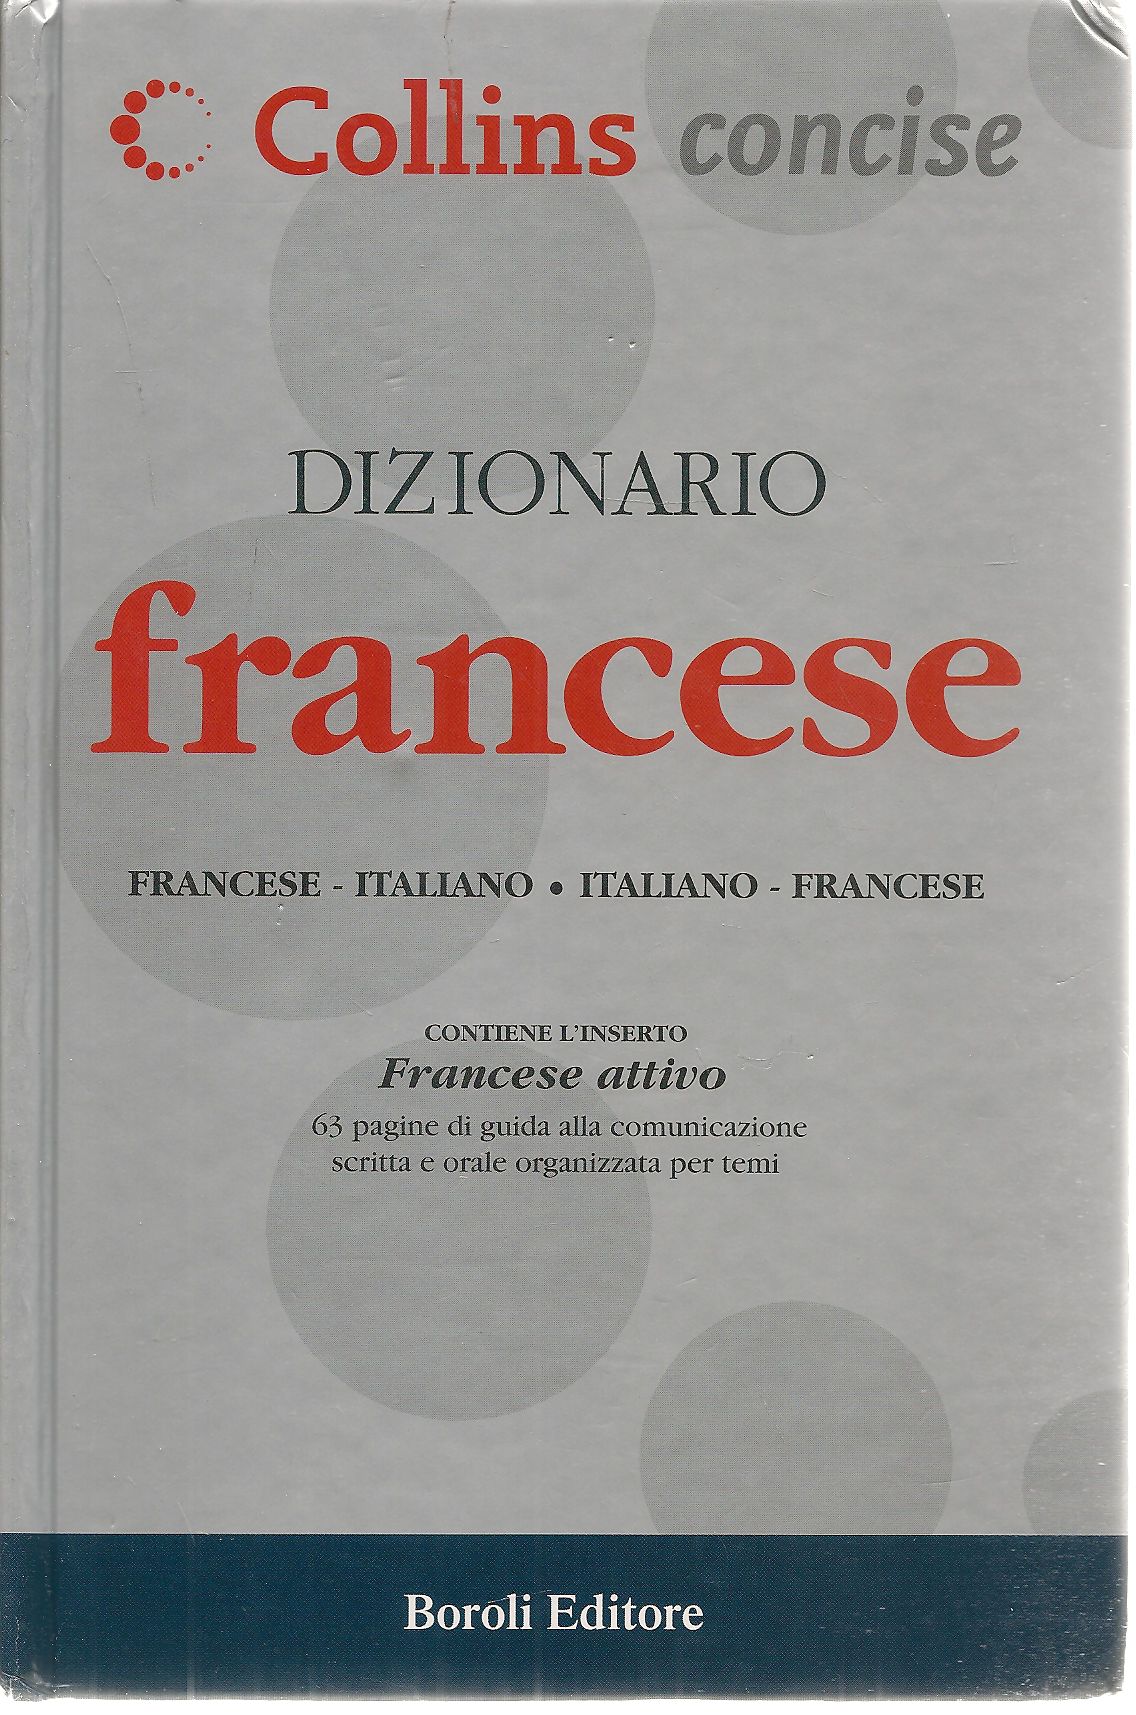 DIZIONARIO FRANCESE - ITALIANO - COLLINS 2004